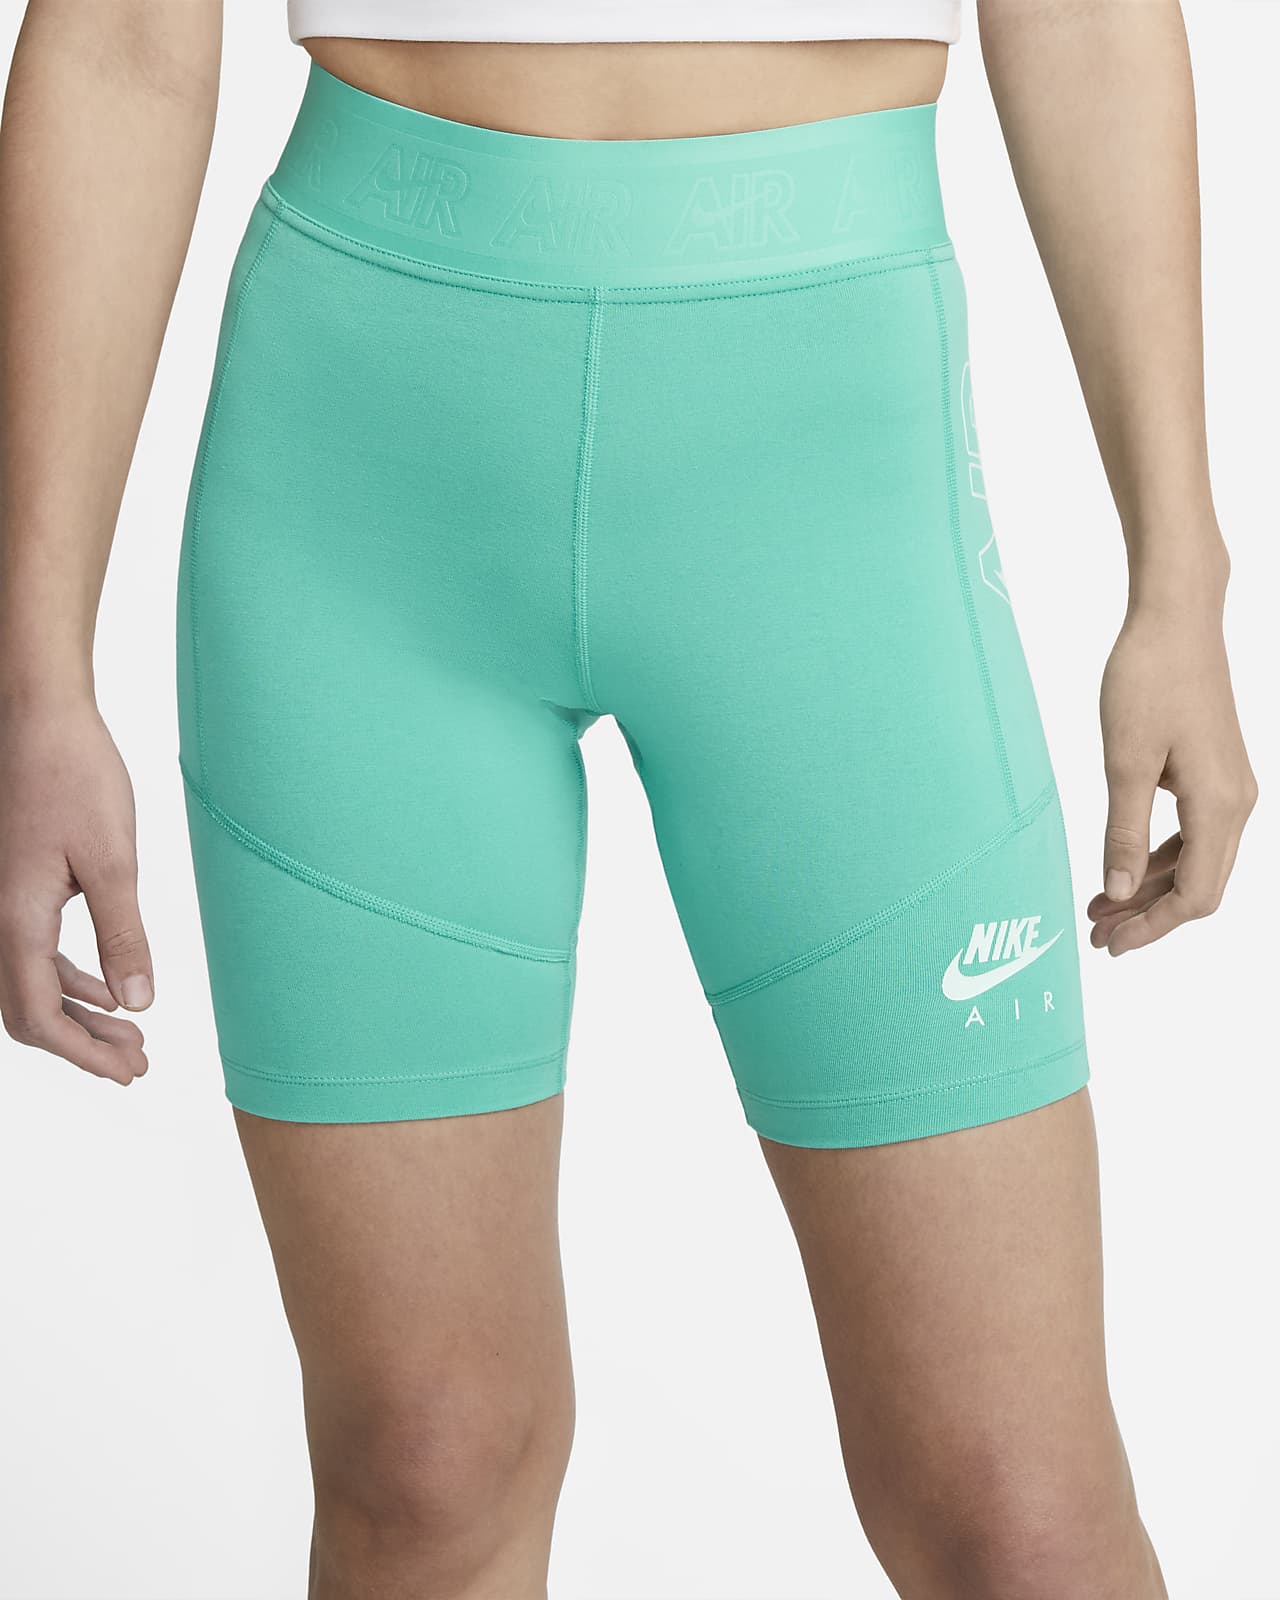 Nike Air Women's Bike Shorts. Nike AE